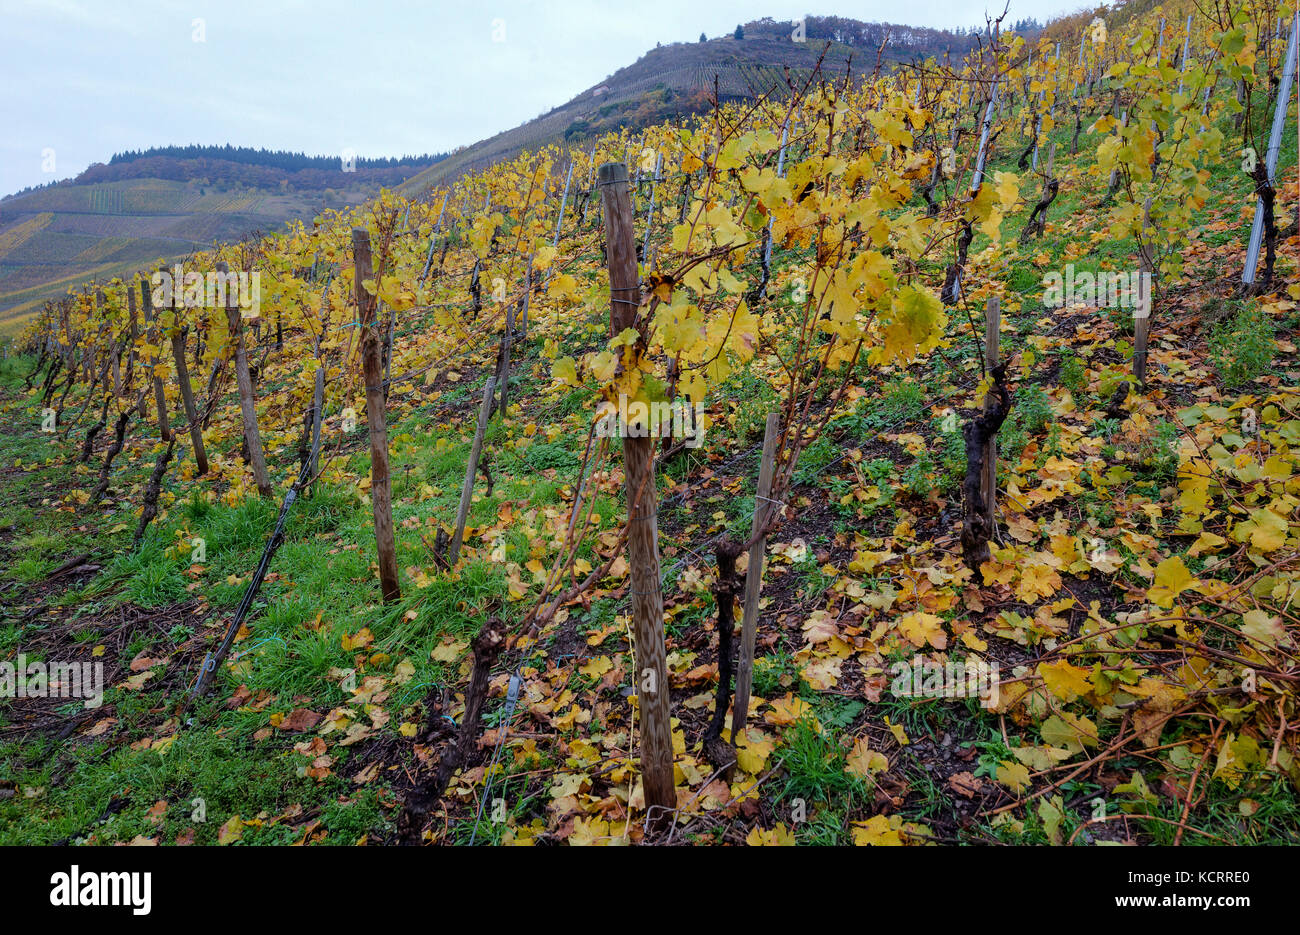 Settore vitivinicolo tedesco: vecchie vigne a Maximiner Herrenberg, Longuich Mosel, Germania Foto Stock